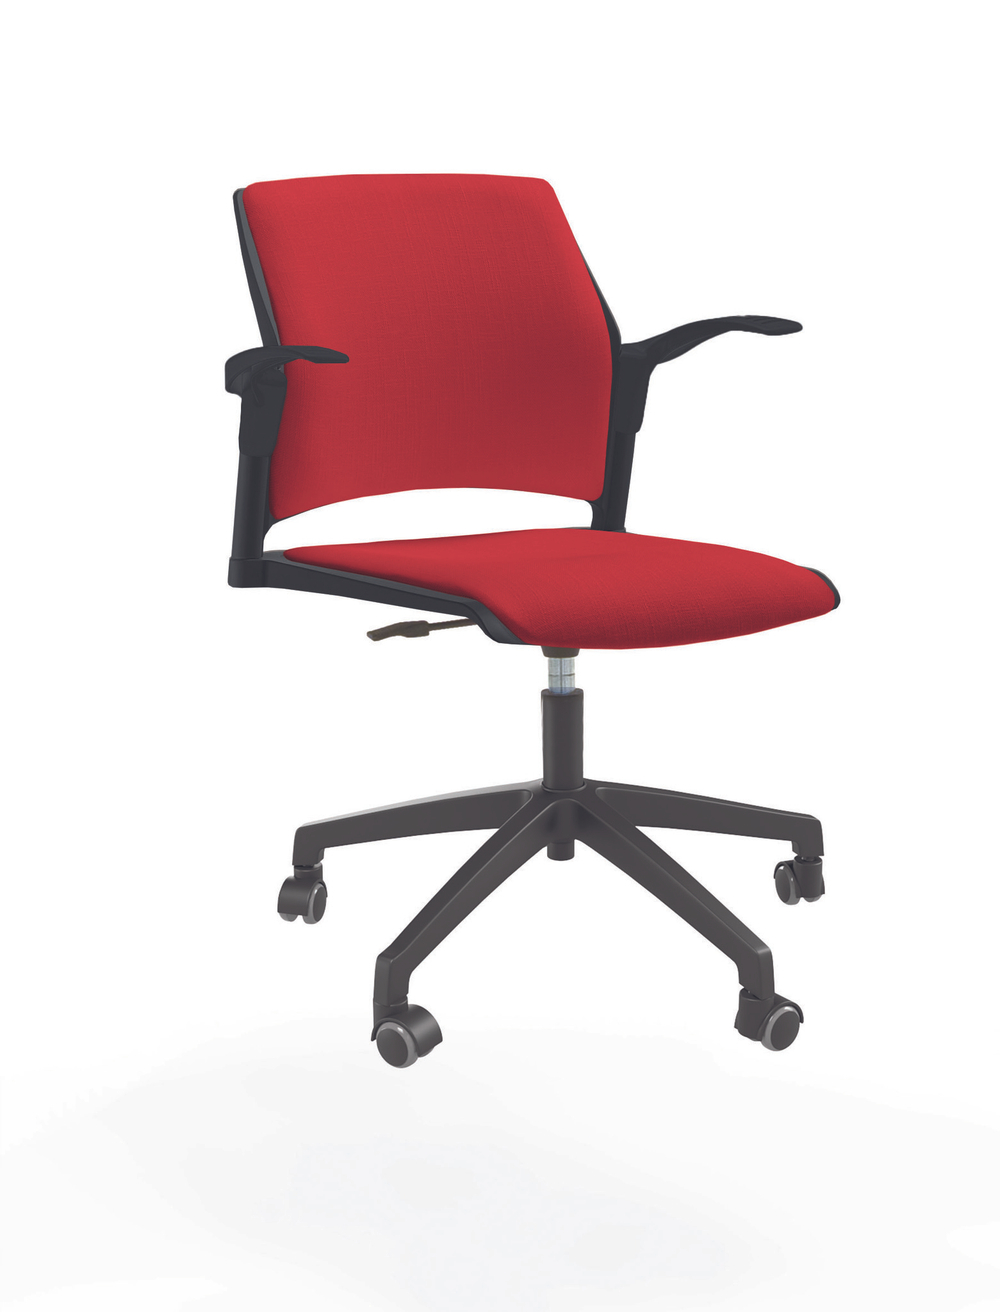 Кресло Rewind каркас черный, пластик черный, база пластиковая чёрная, с открытыми подлокотниками, сидение и спинка красные